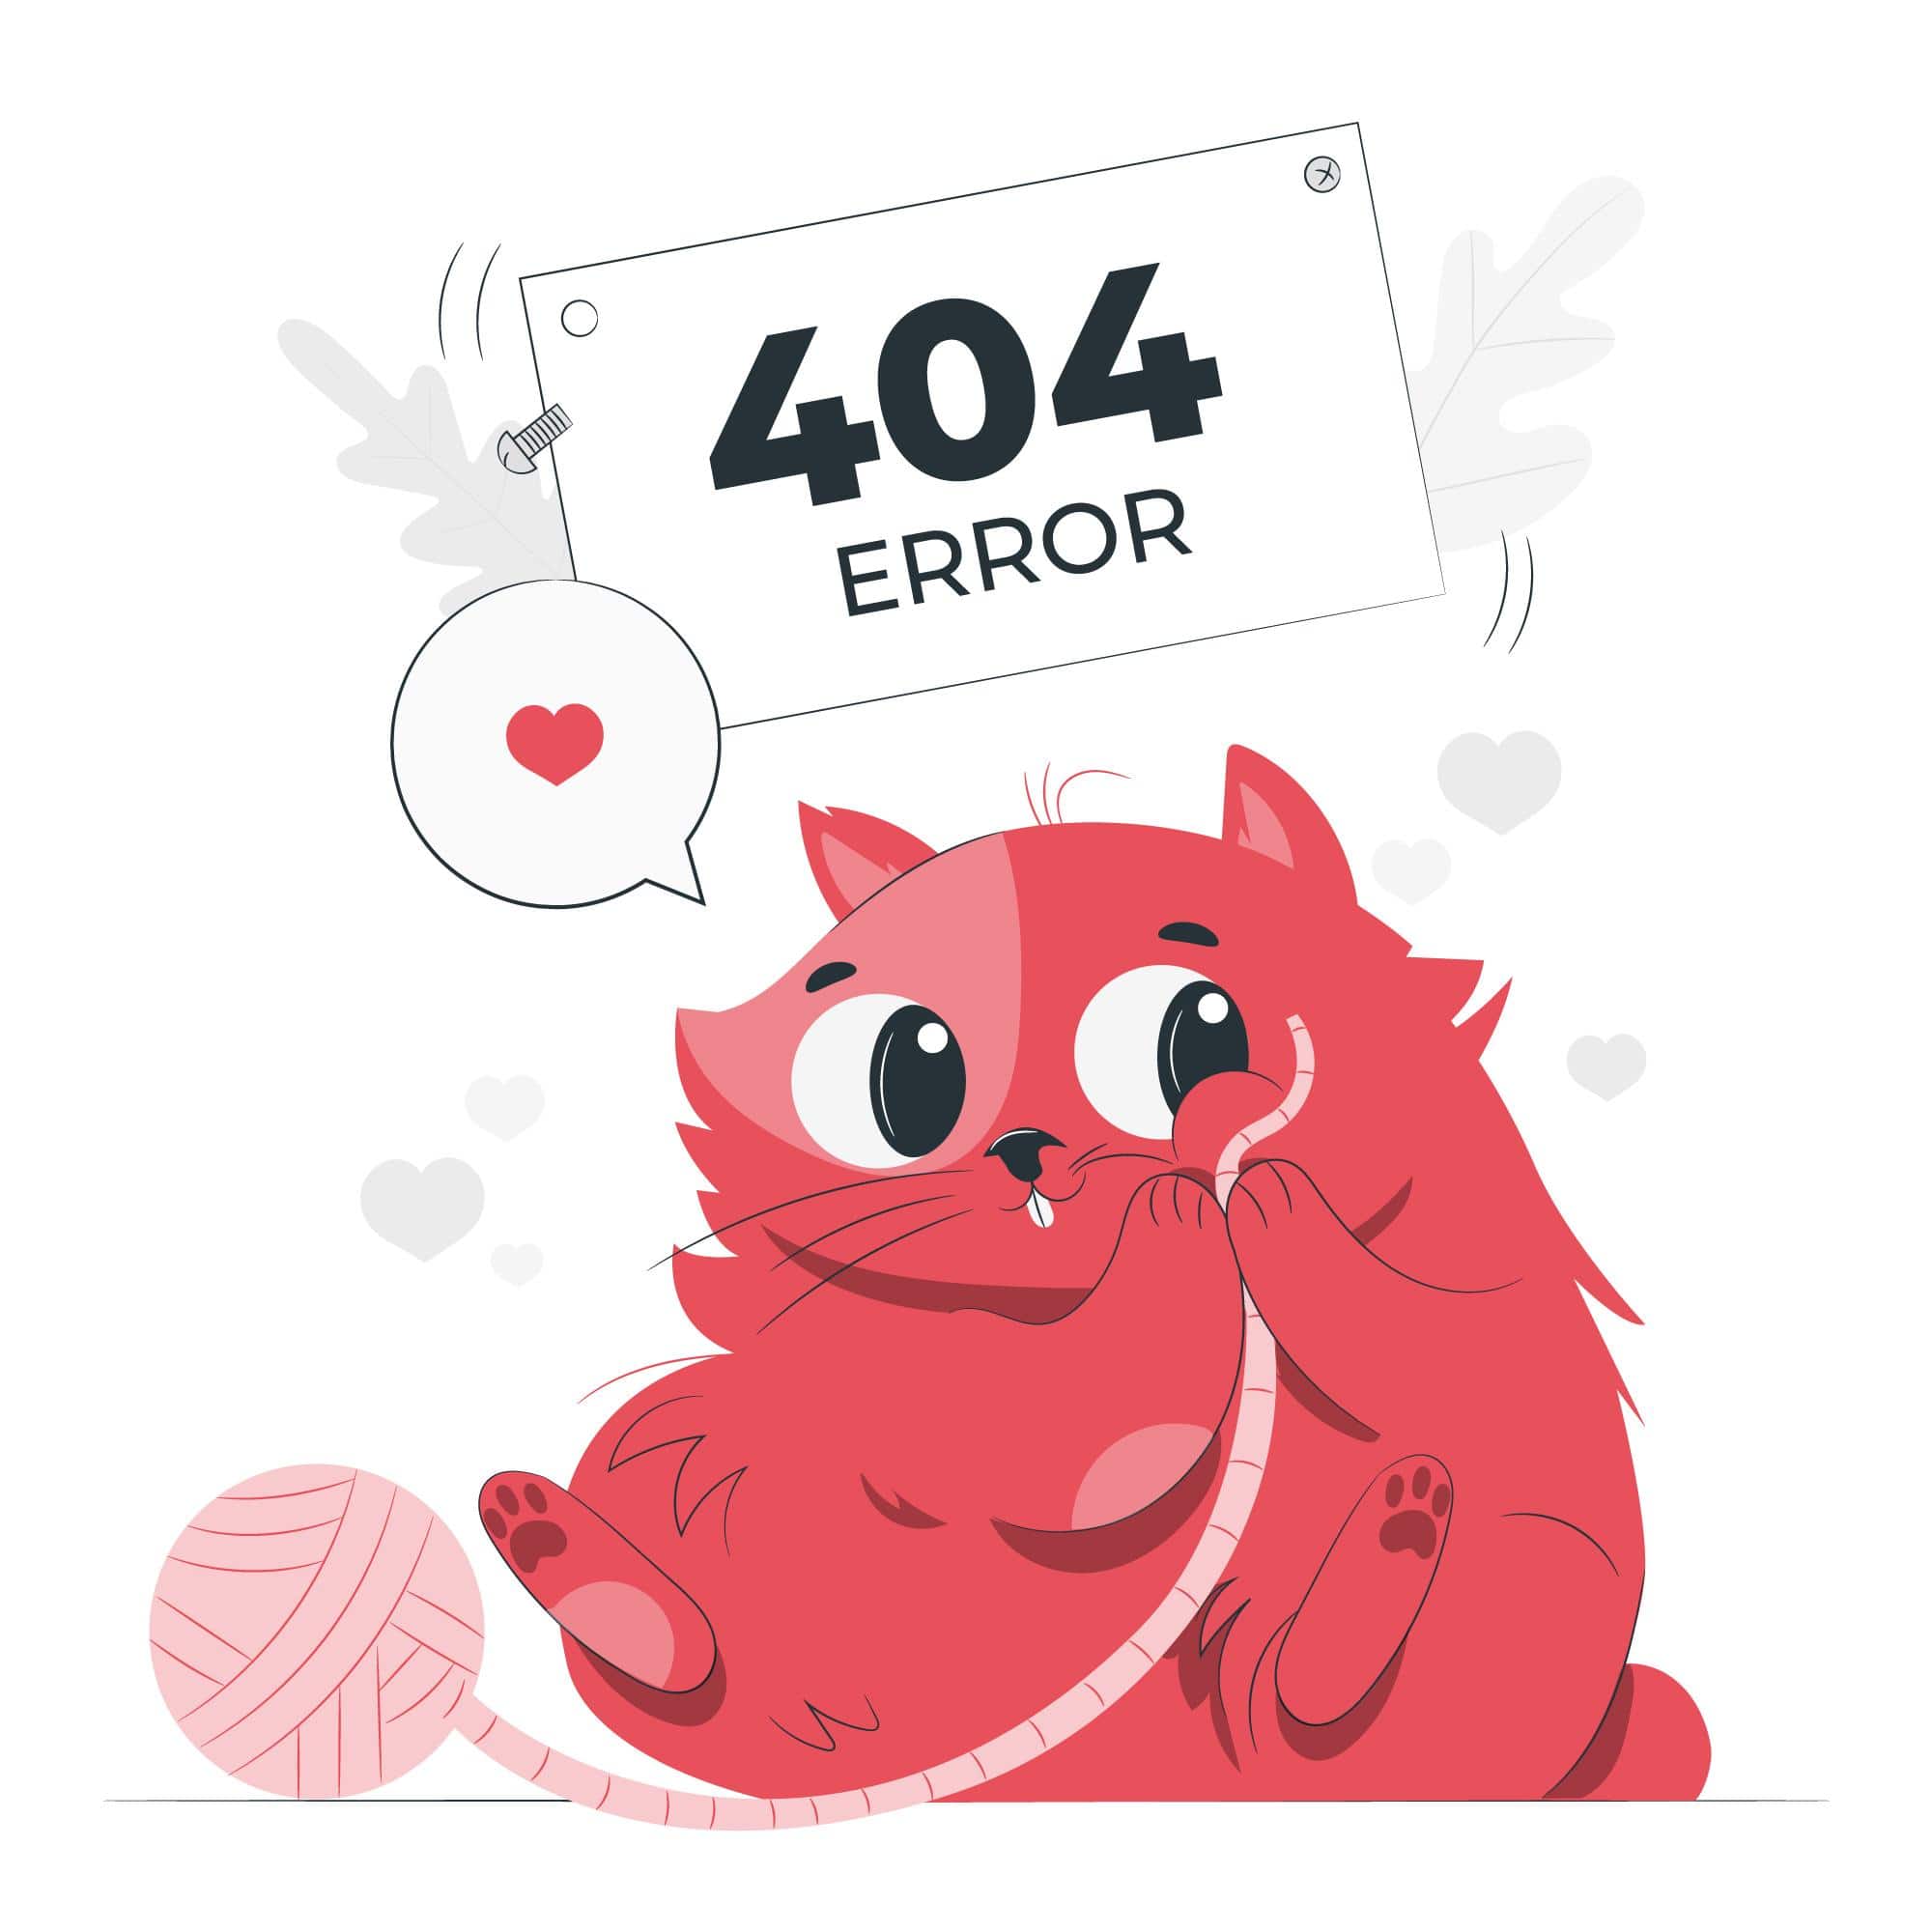 404 ERROR